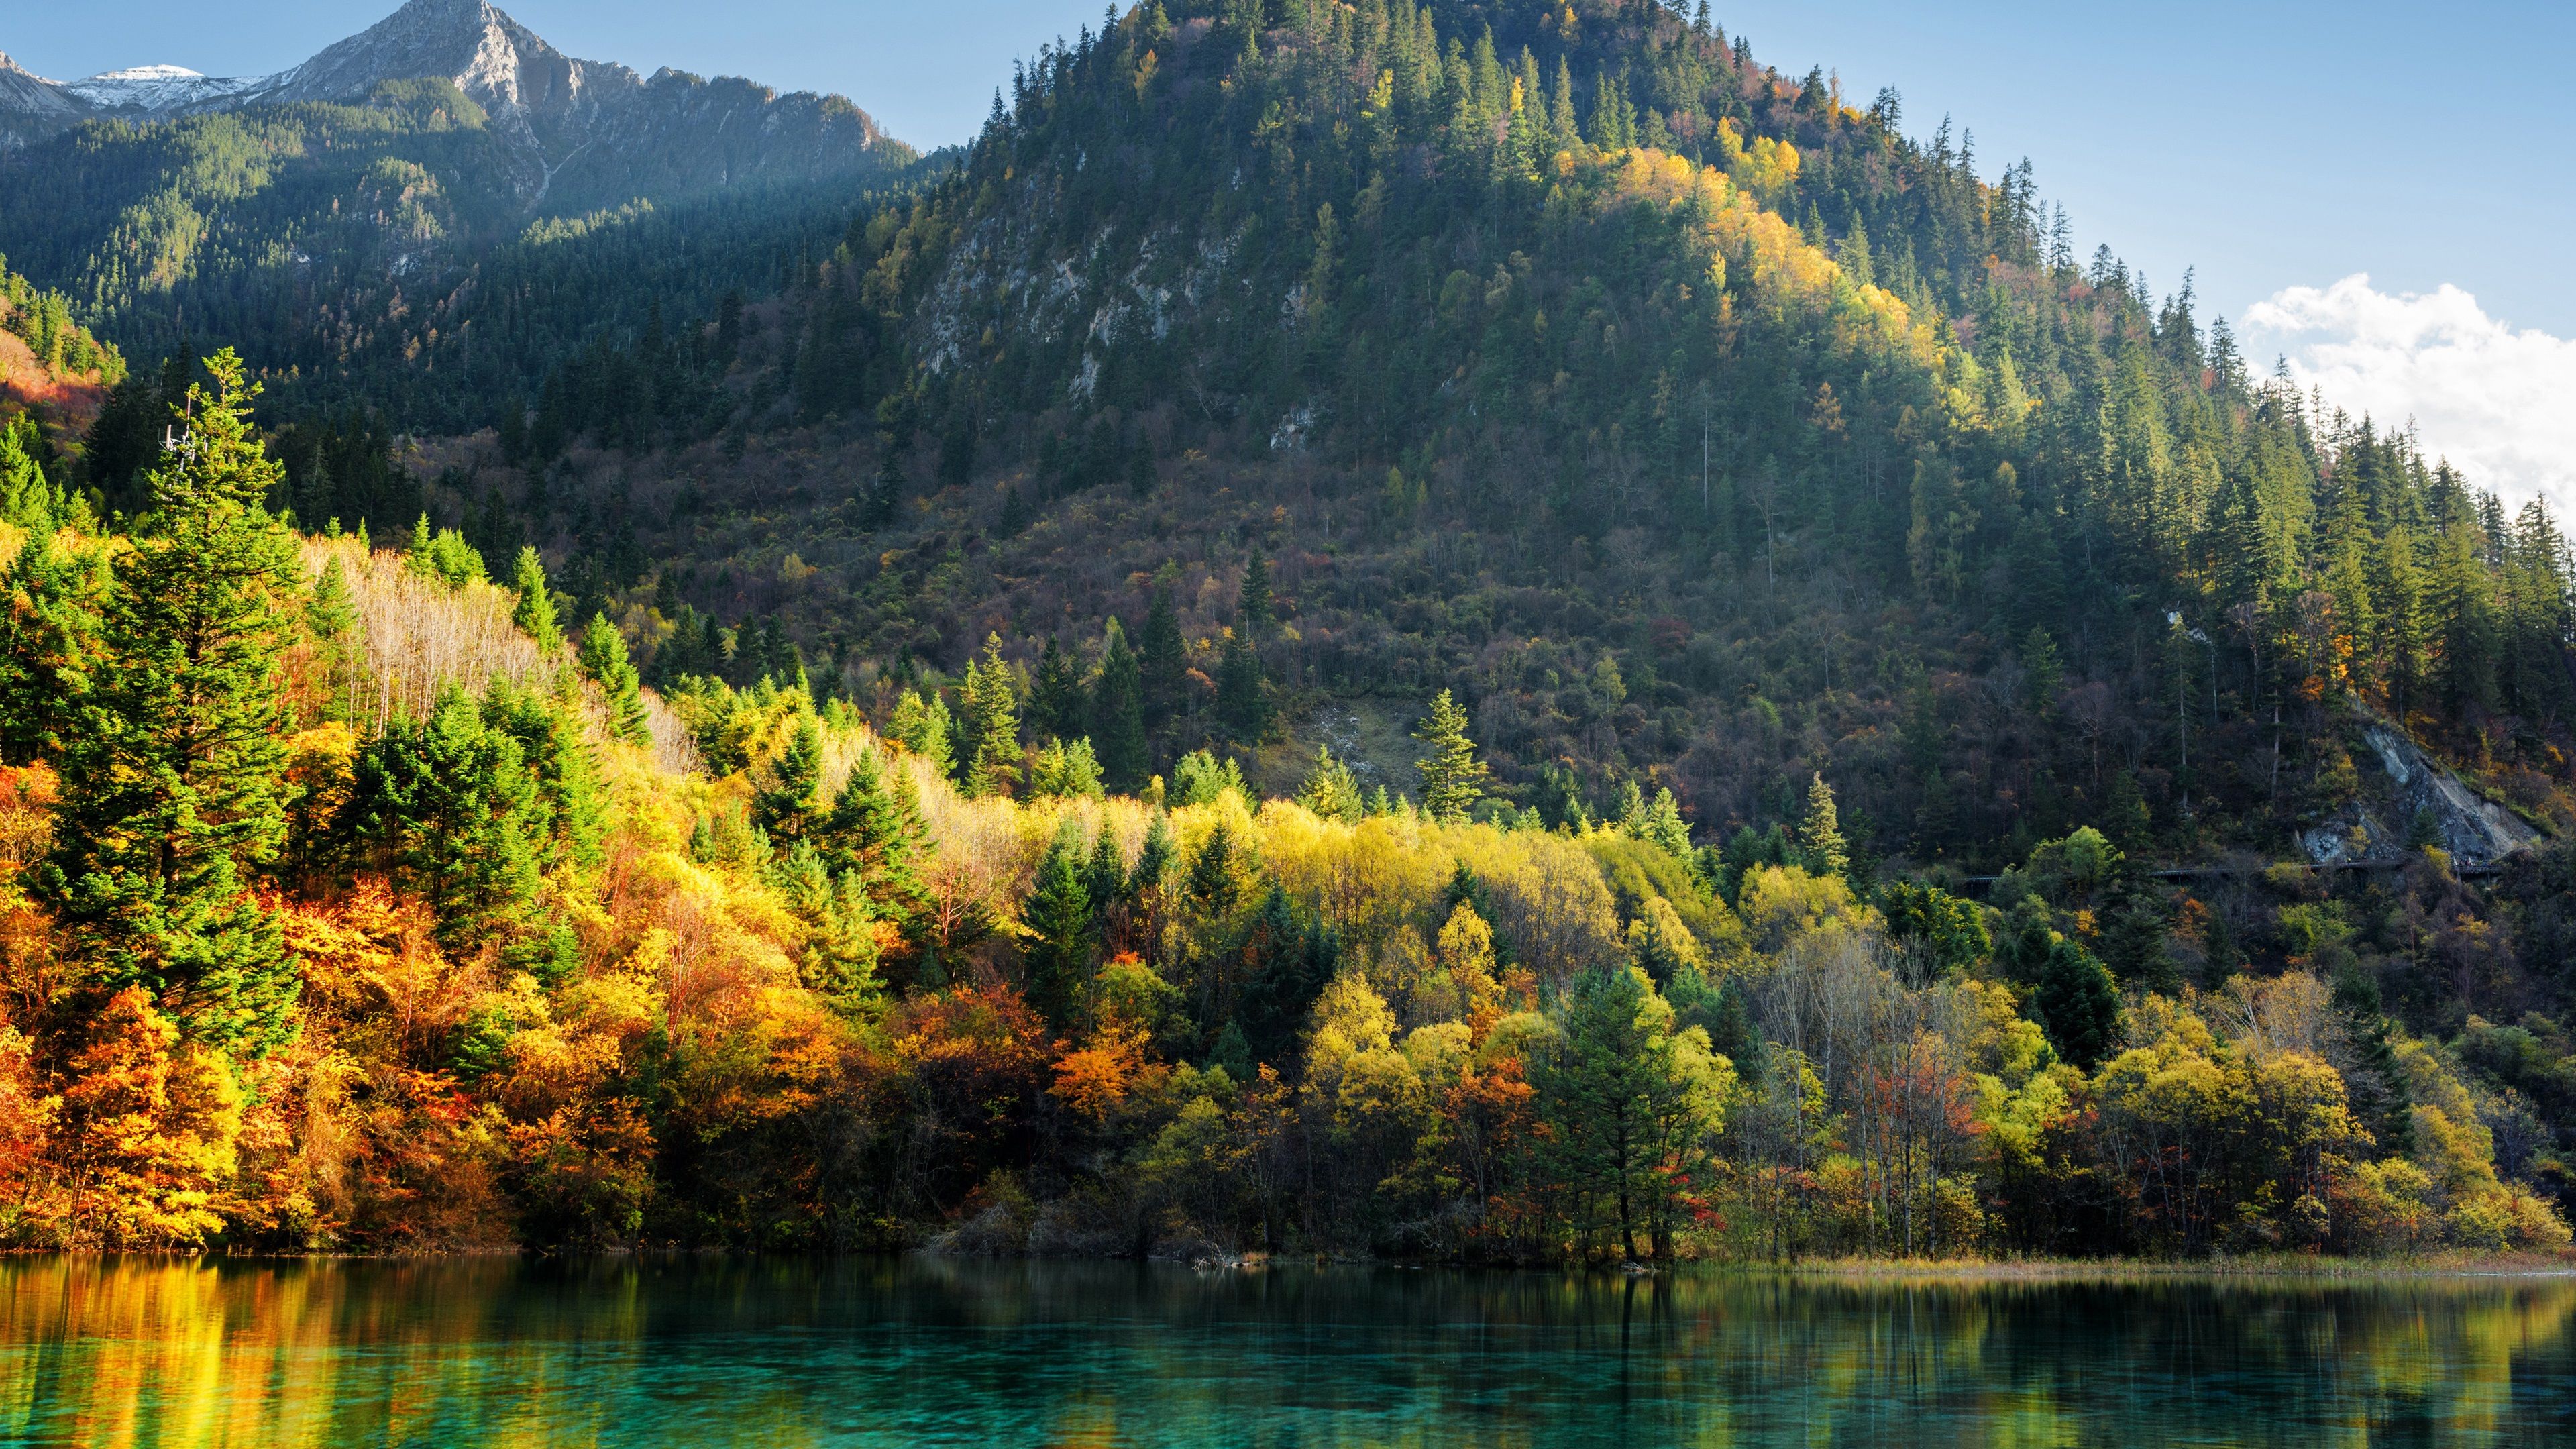 Wallpaper China, Jiuzhaigou, trees, mountains, lake, autumn 3840x2160 UHD 4K Picture, Image